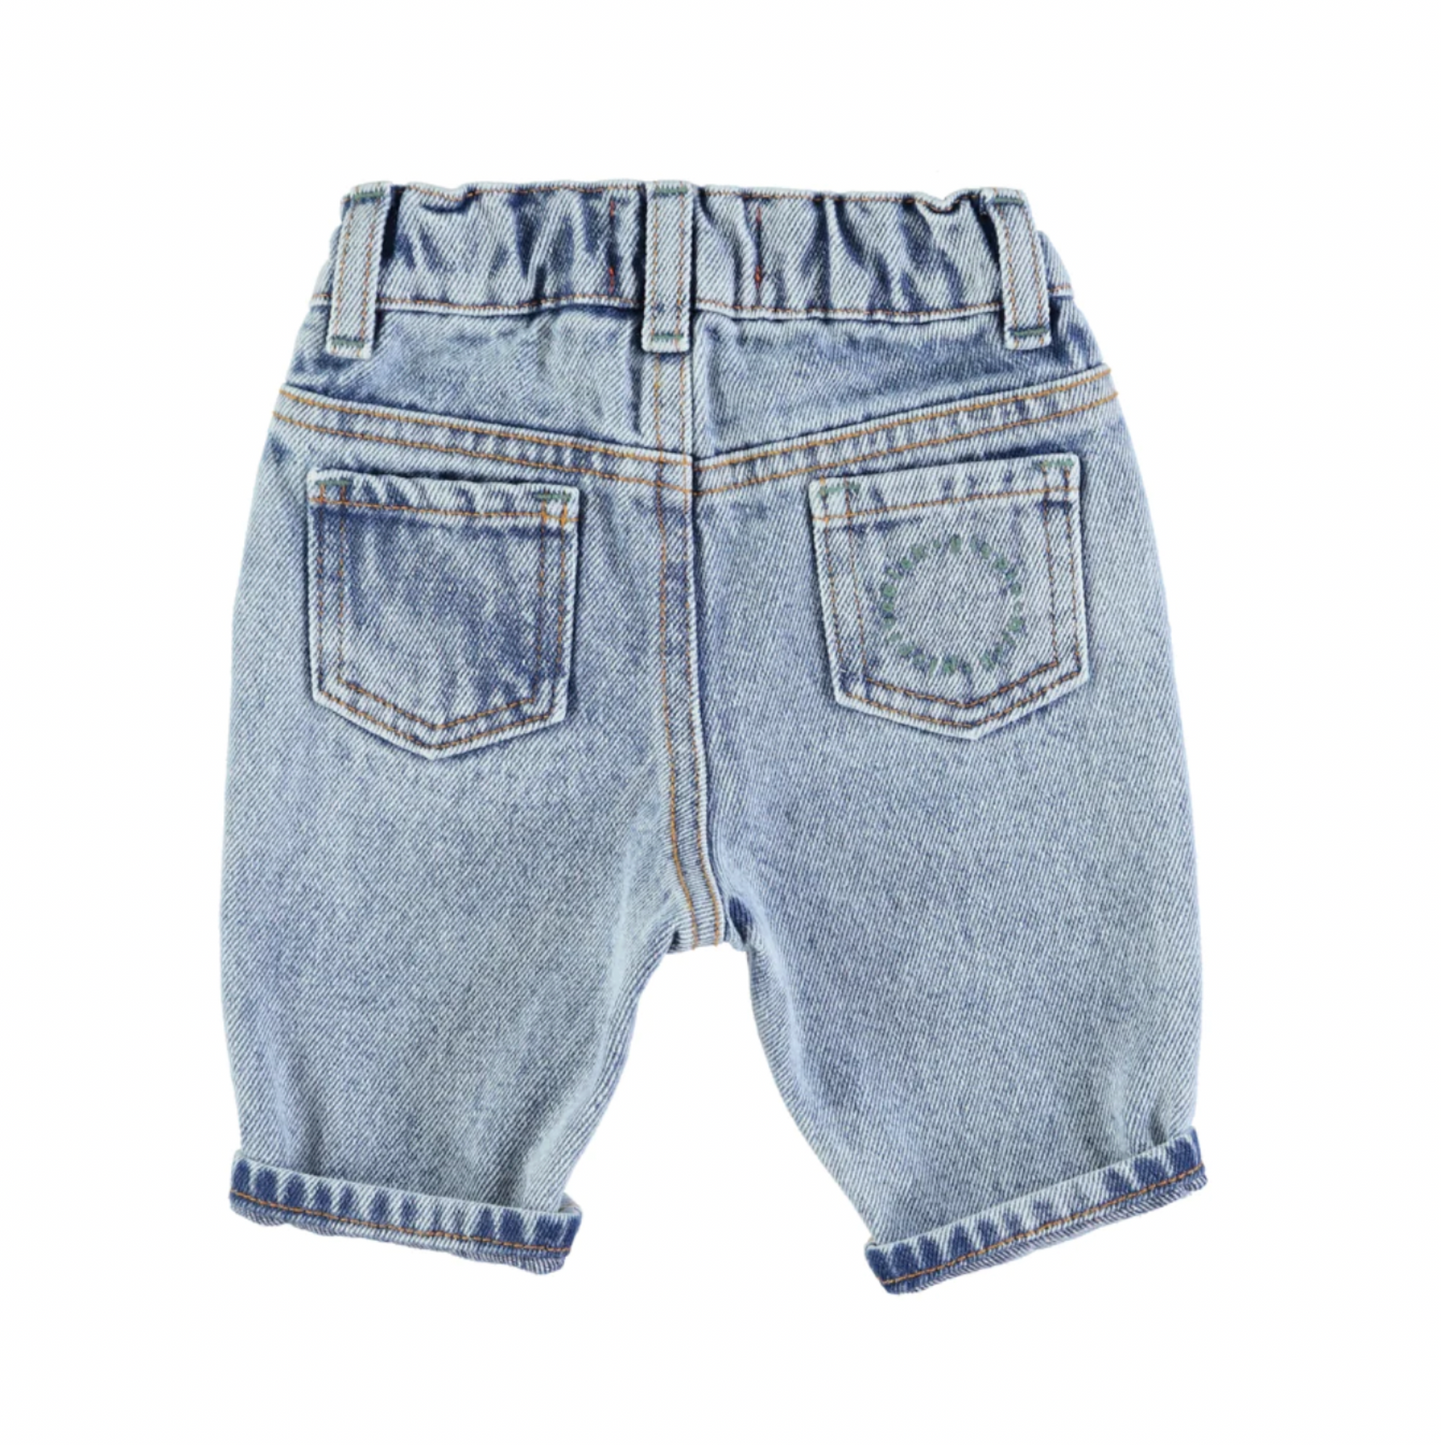 Jean | Délavé-Piu Piu Chick-Super Châtaigne-Pantalons, Leggins & Jeans : Product type